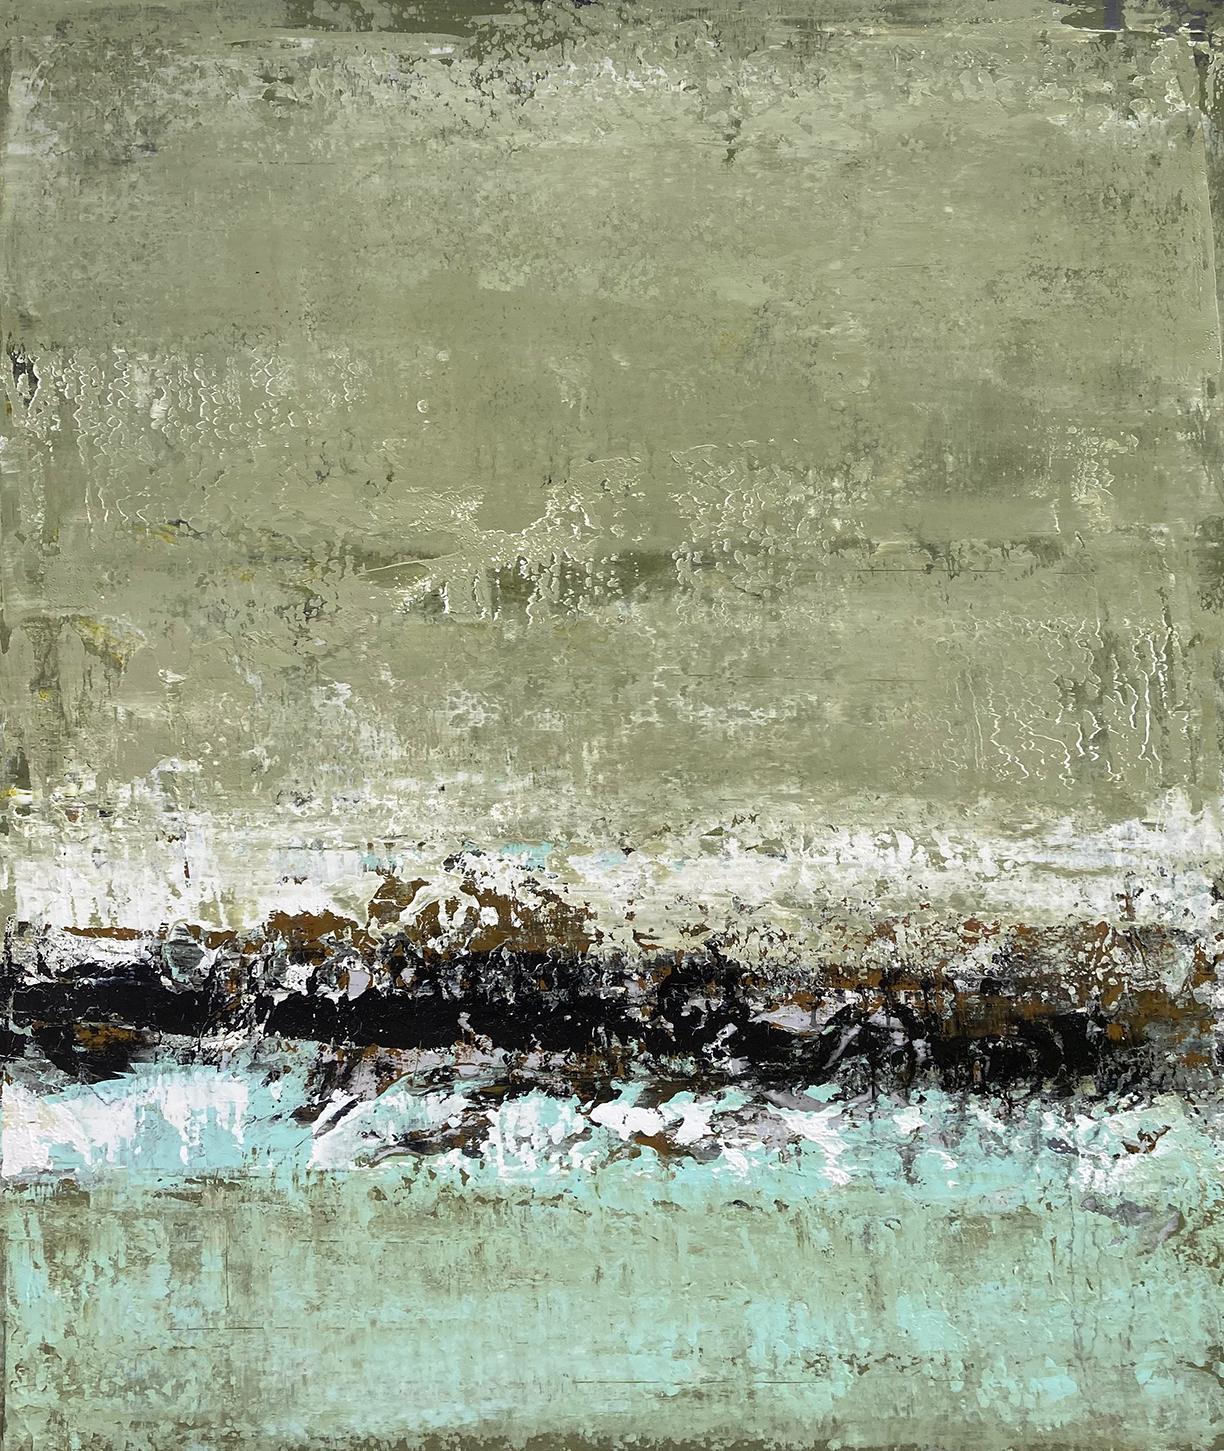 Landscape Painting Brad Robertson - Sans titre, n° 7 - Peinture de paysage abstrait contemporaine verte texturée